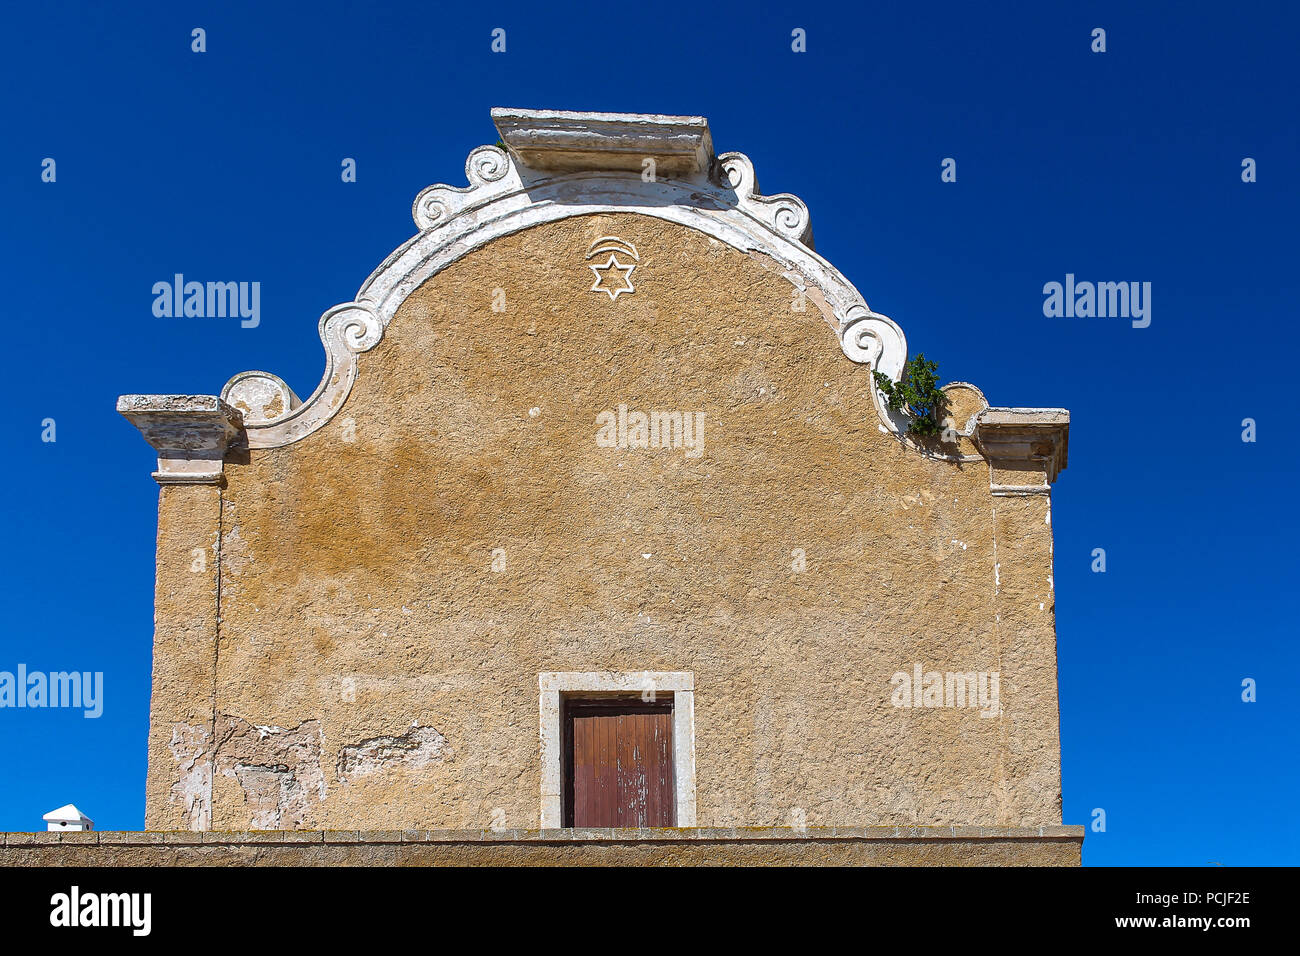 Avant de l'immeuble avec une porte et une étoile. Arche du toit. Ancienne Synagogue à El Jadida, Maroc. Ciel bleu. Banque D'Images